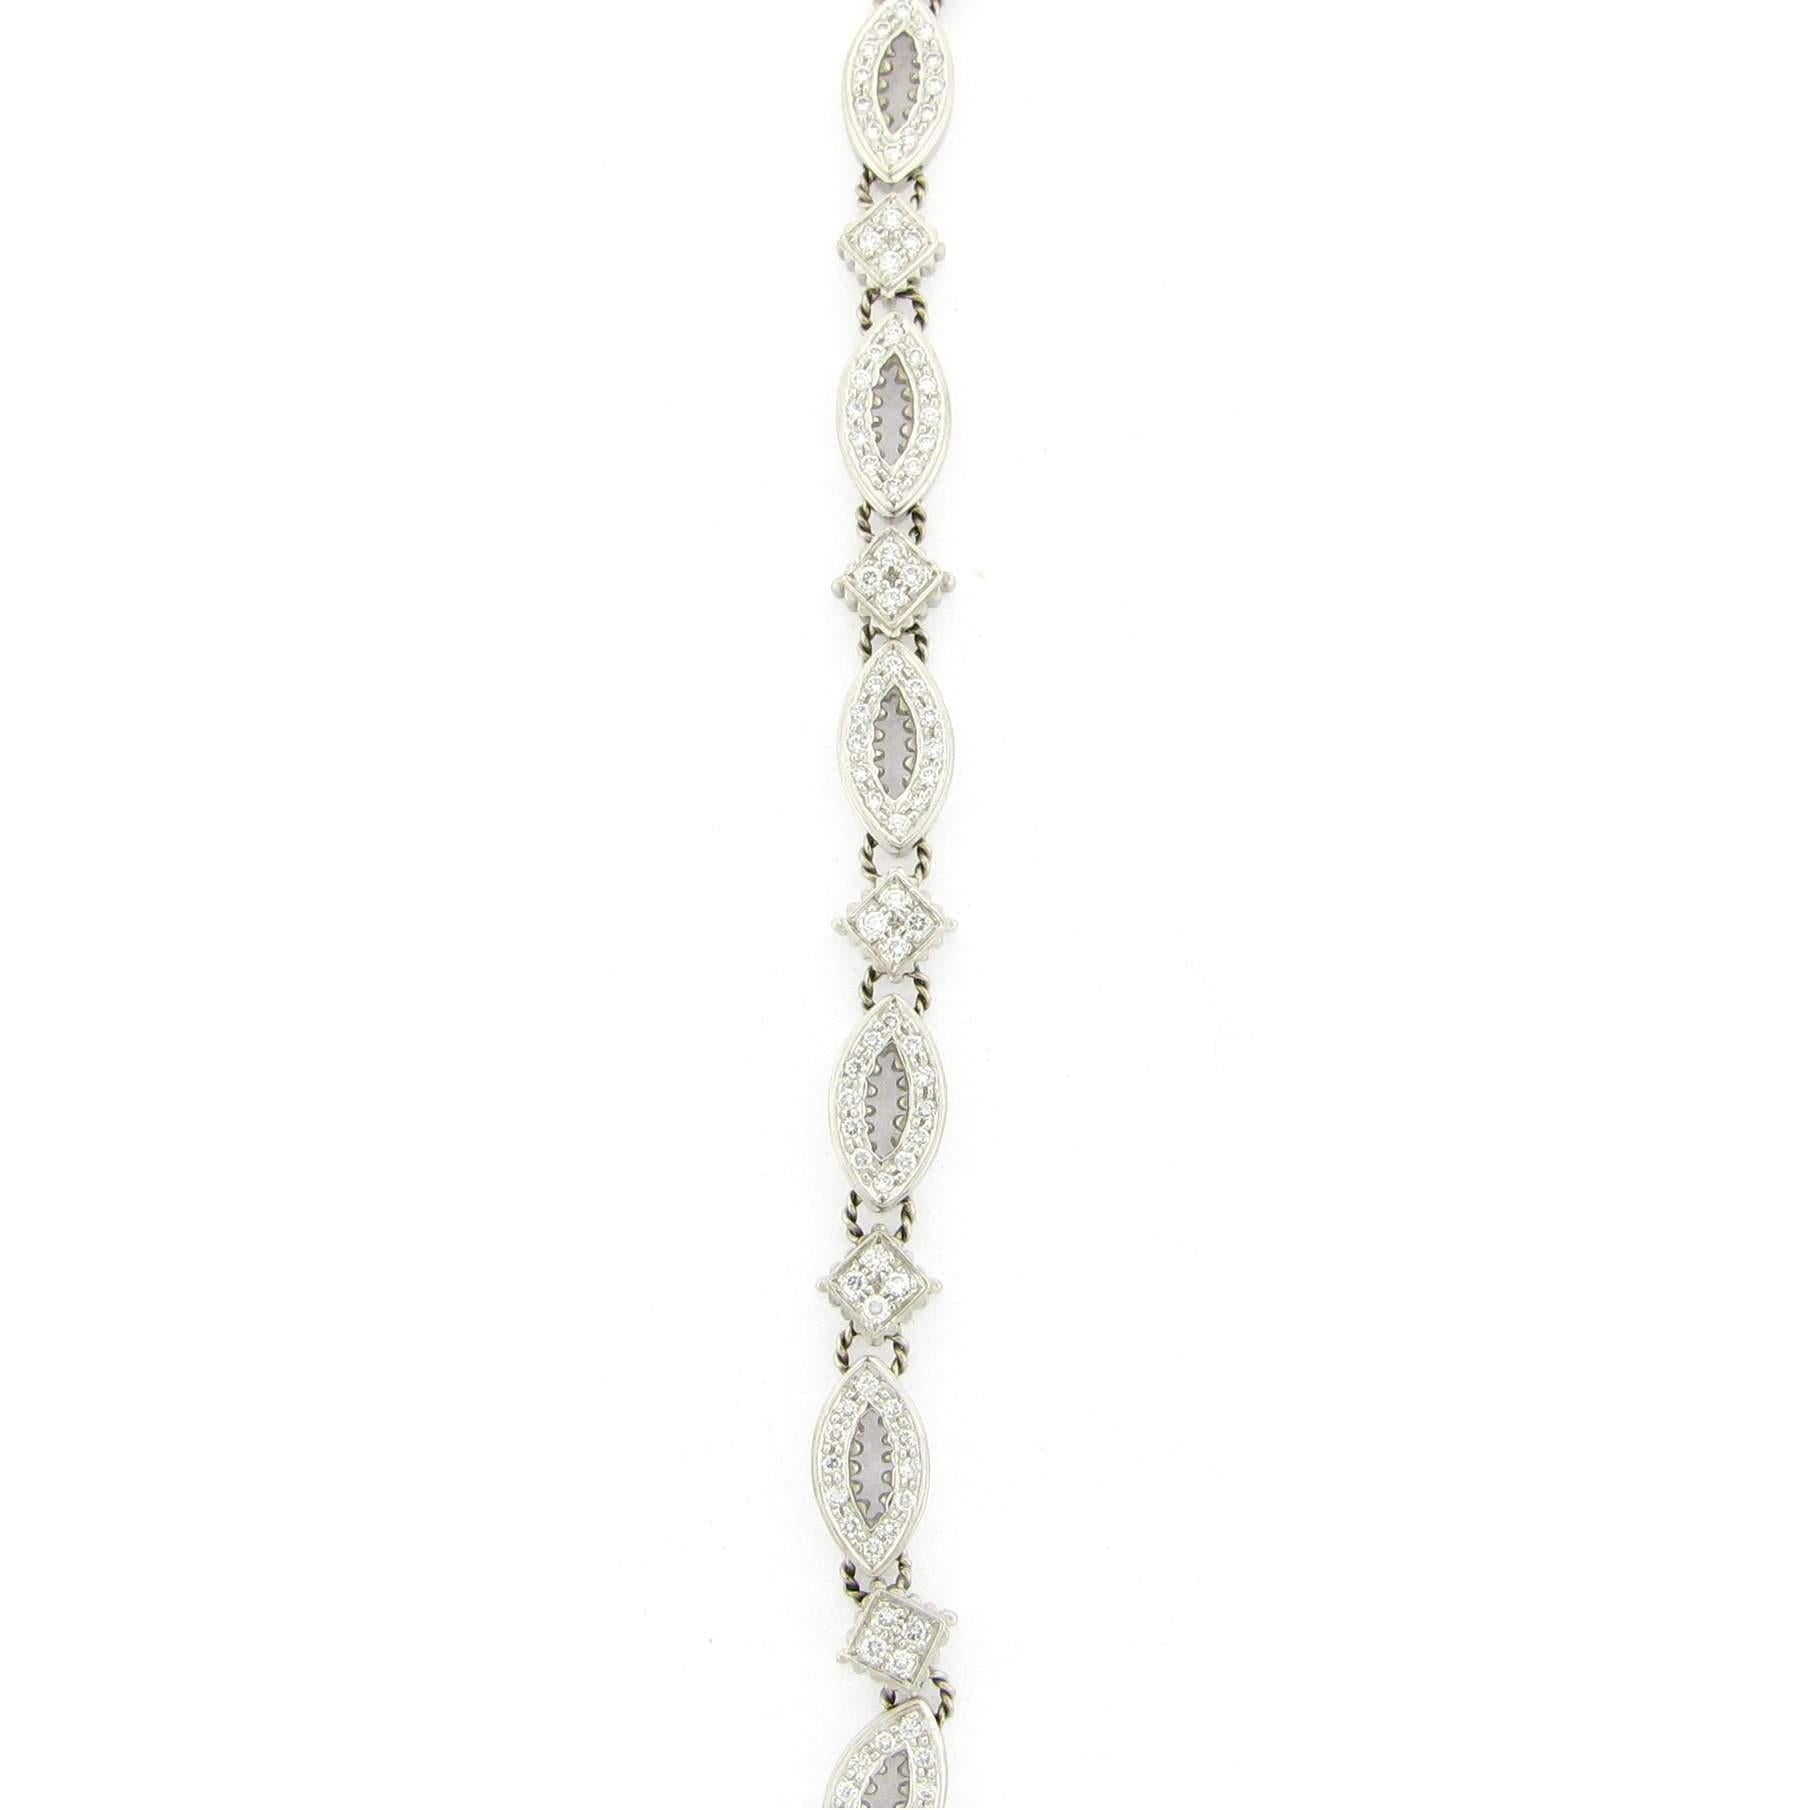 Doris Panos Diamond Fashion Bracelet. This Bracelet Has 131 Round Diamonds ~2.62CTW. And Has Square And Oval Alternating Diamond Stations. The Bracelet Is 7